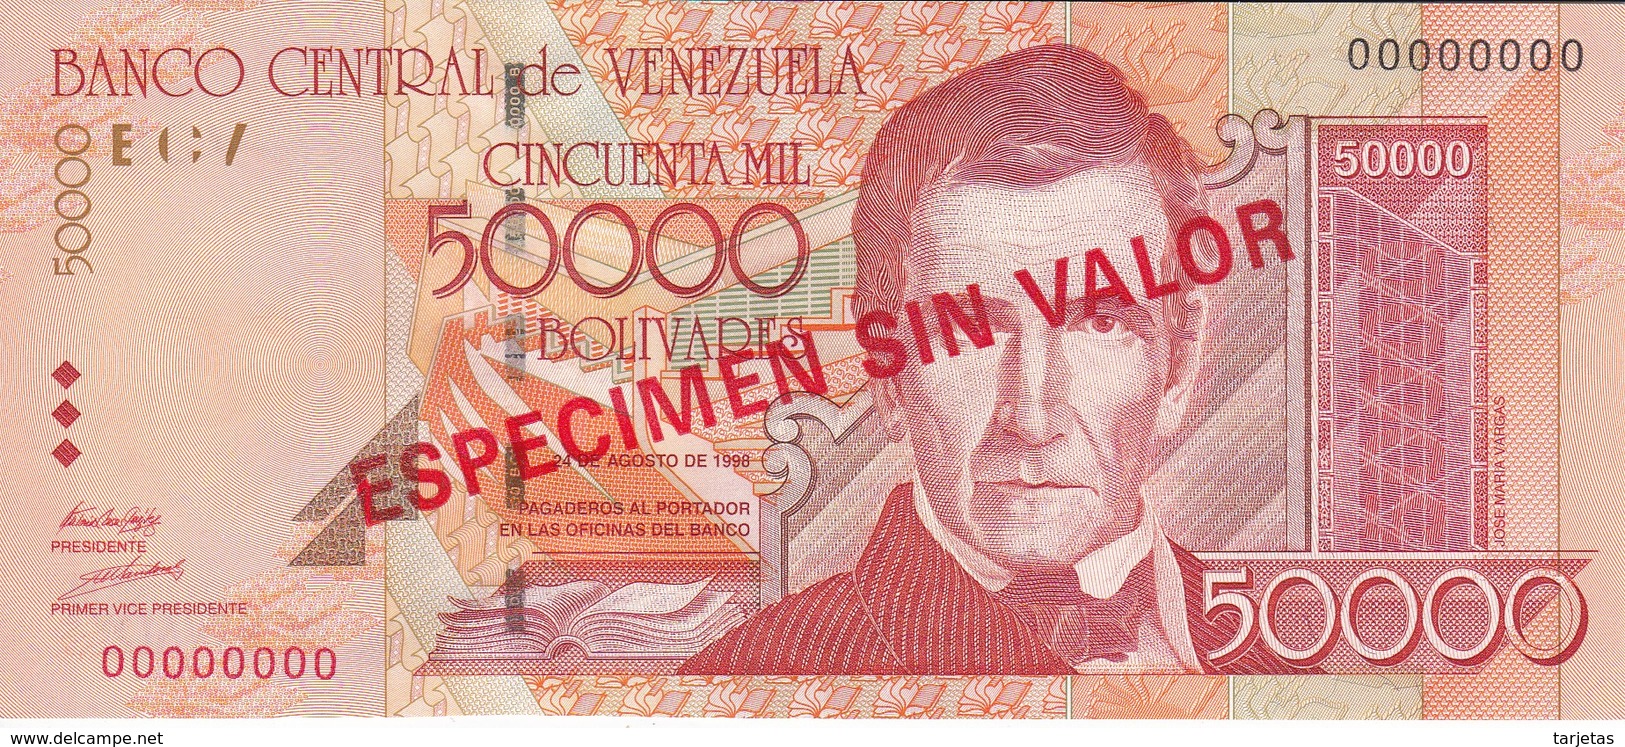 ESPECIMEN -BILLETE DE VENEZUELA DE 50000 BOLIVARES DEL AÑO 1998 SIN CIRCULAR-UNCIRCULATED (SPECIMEN) (BANKNOTE) MUY RARO - Venezuela